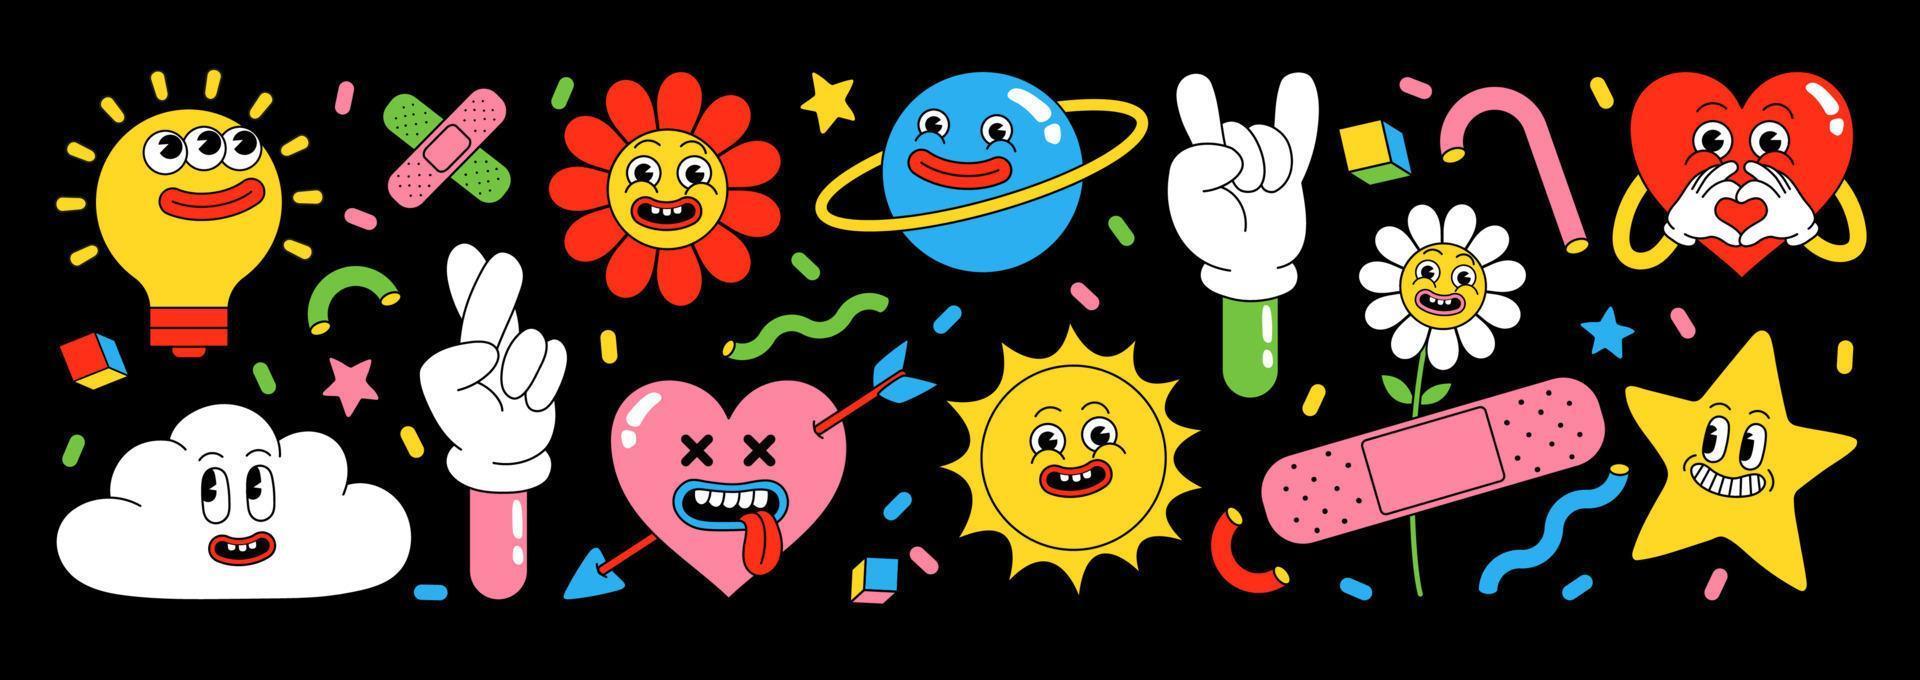 lustige Cartoon-Sticker-Packung. Herz, Sonne, Planet, Beere, abstrakte Gesichter etc. vektor